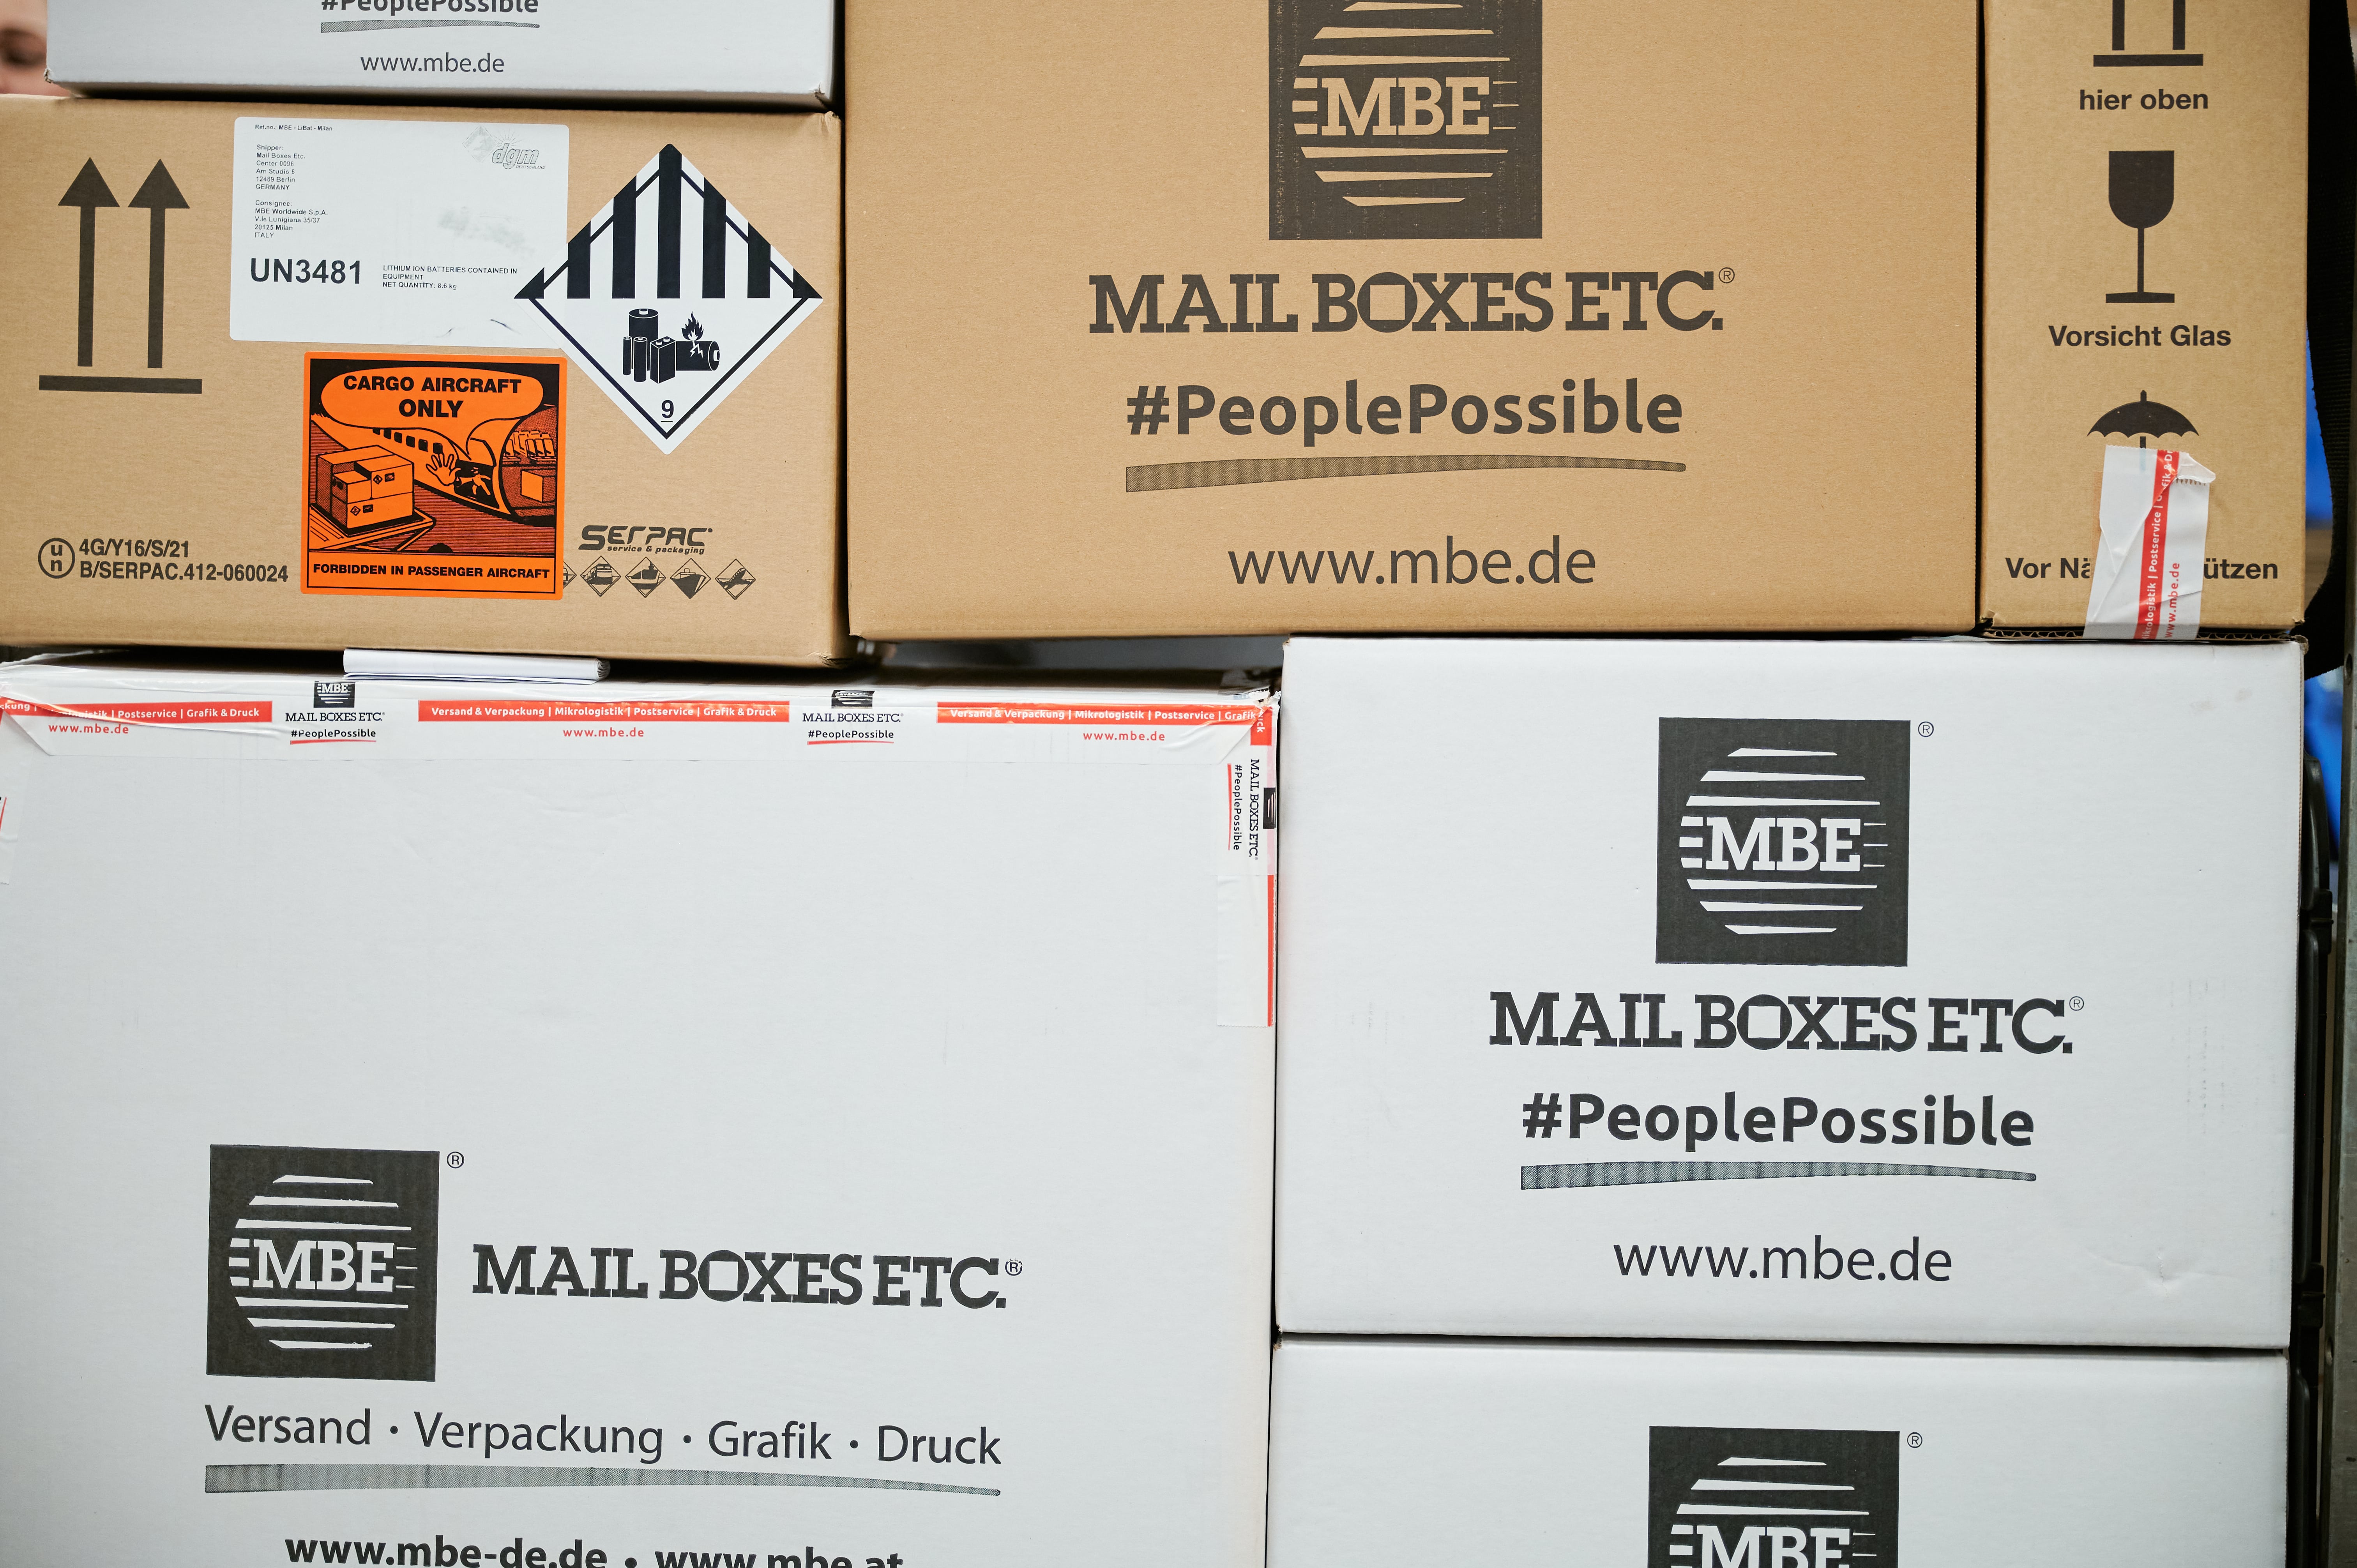 Bild 5 Mail Boxes Etc. - Center MBE 0183 in Nürnberg